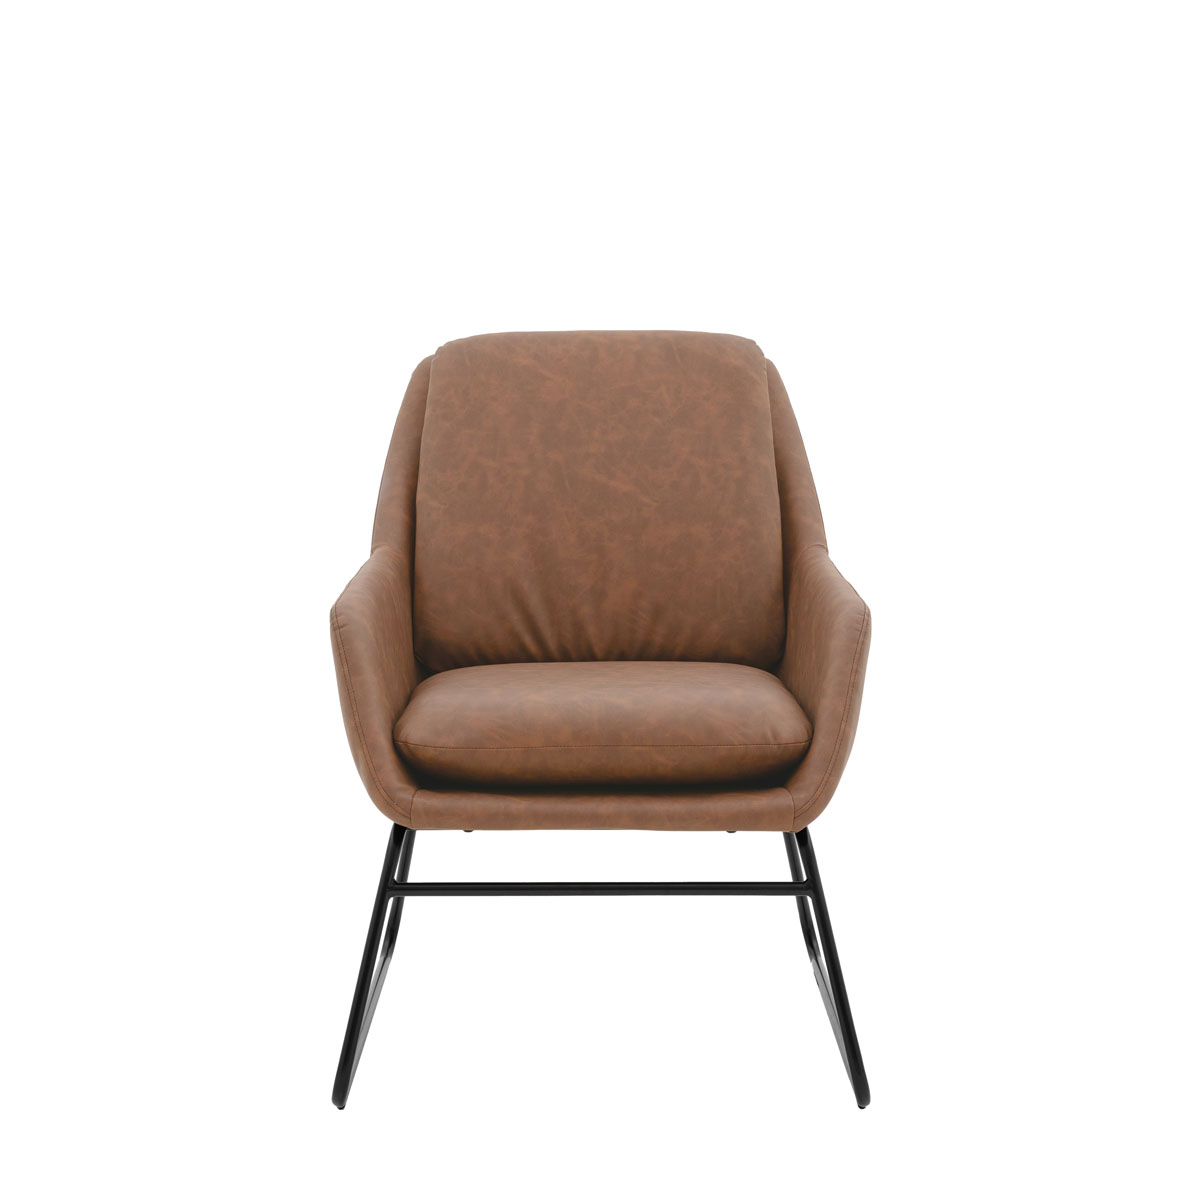 Funton Chair Brown 635x885x835mm